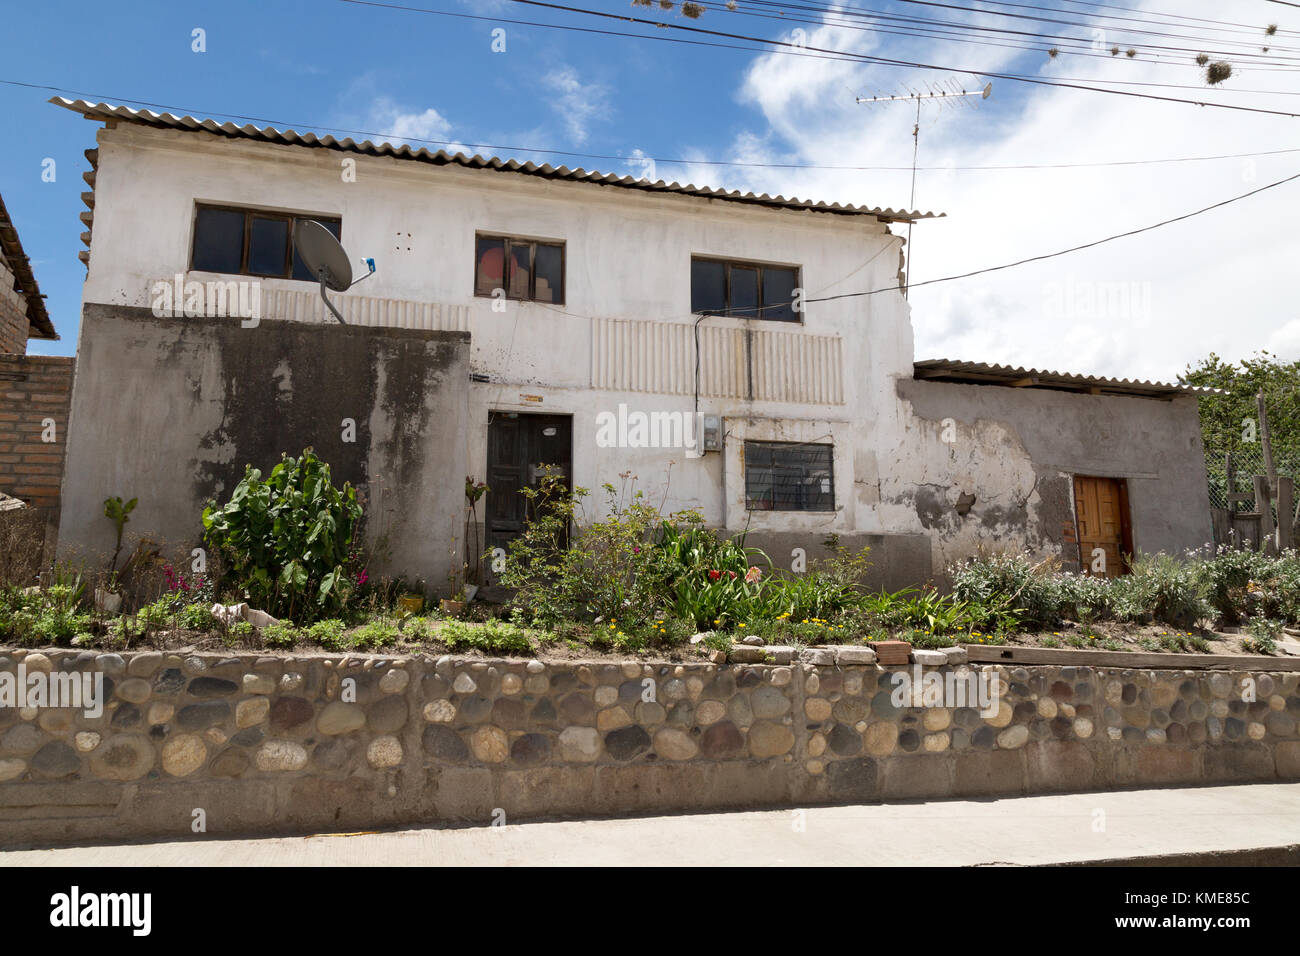 Ecuador house, Tumbabiro village, northern Ecuador, South America Stock Photo